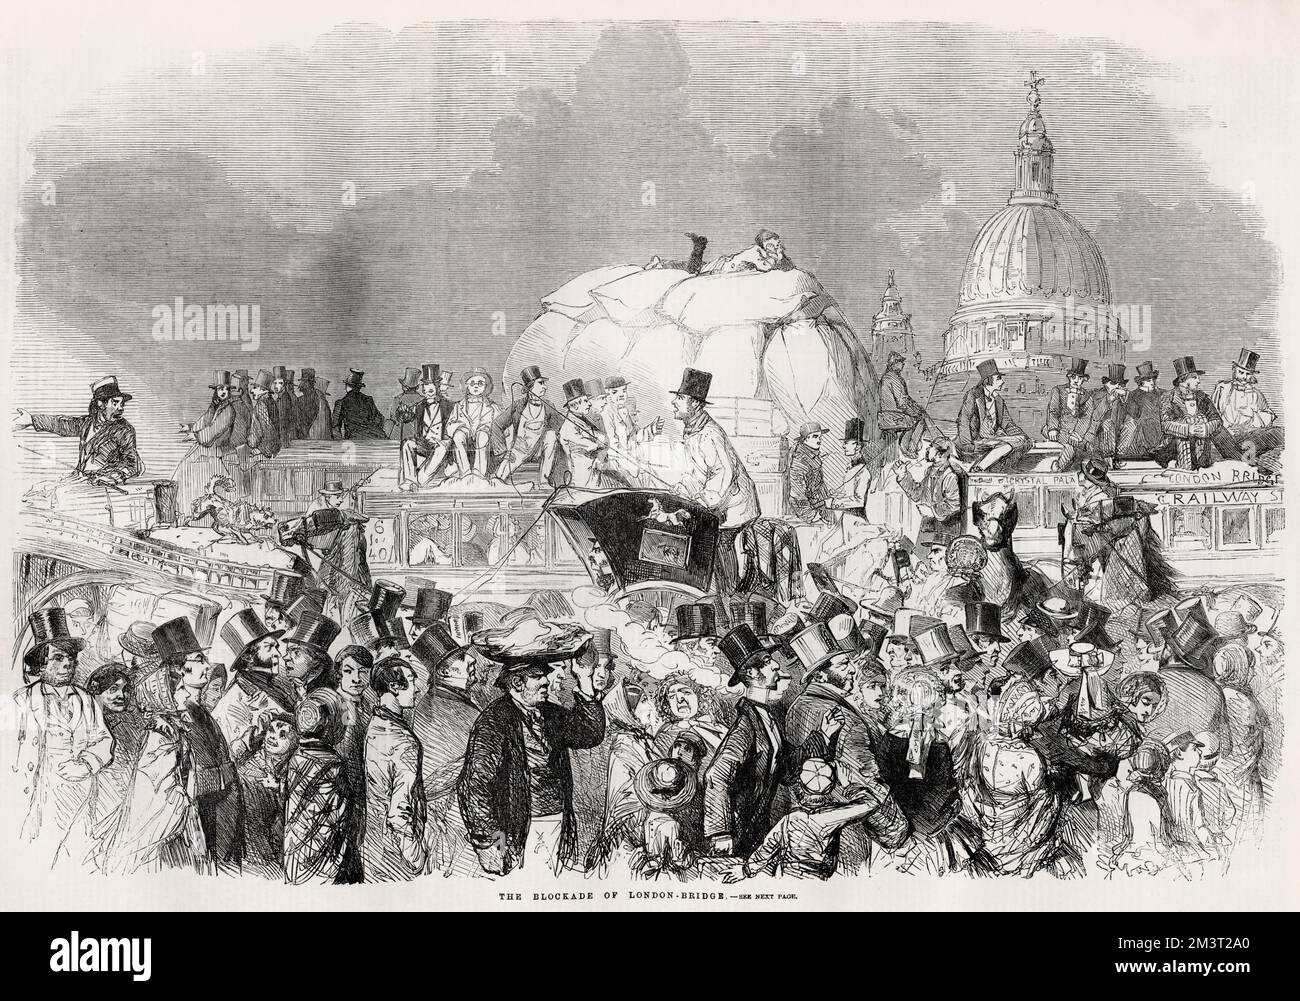 Die Blockade der London Bridge, 1859. Der überfüllte und überfüllte Zustand der Straßen Londons, insbesondere in der Stadt. Stockfoto